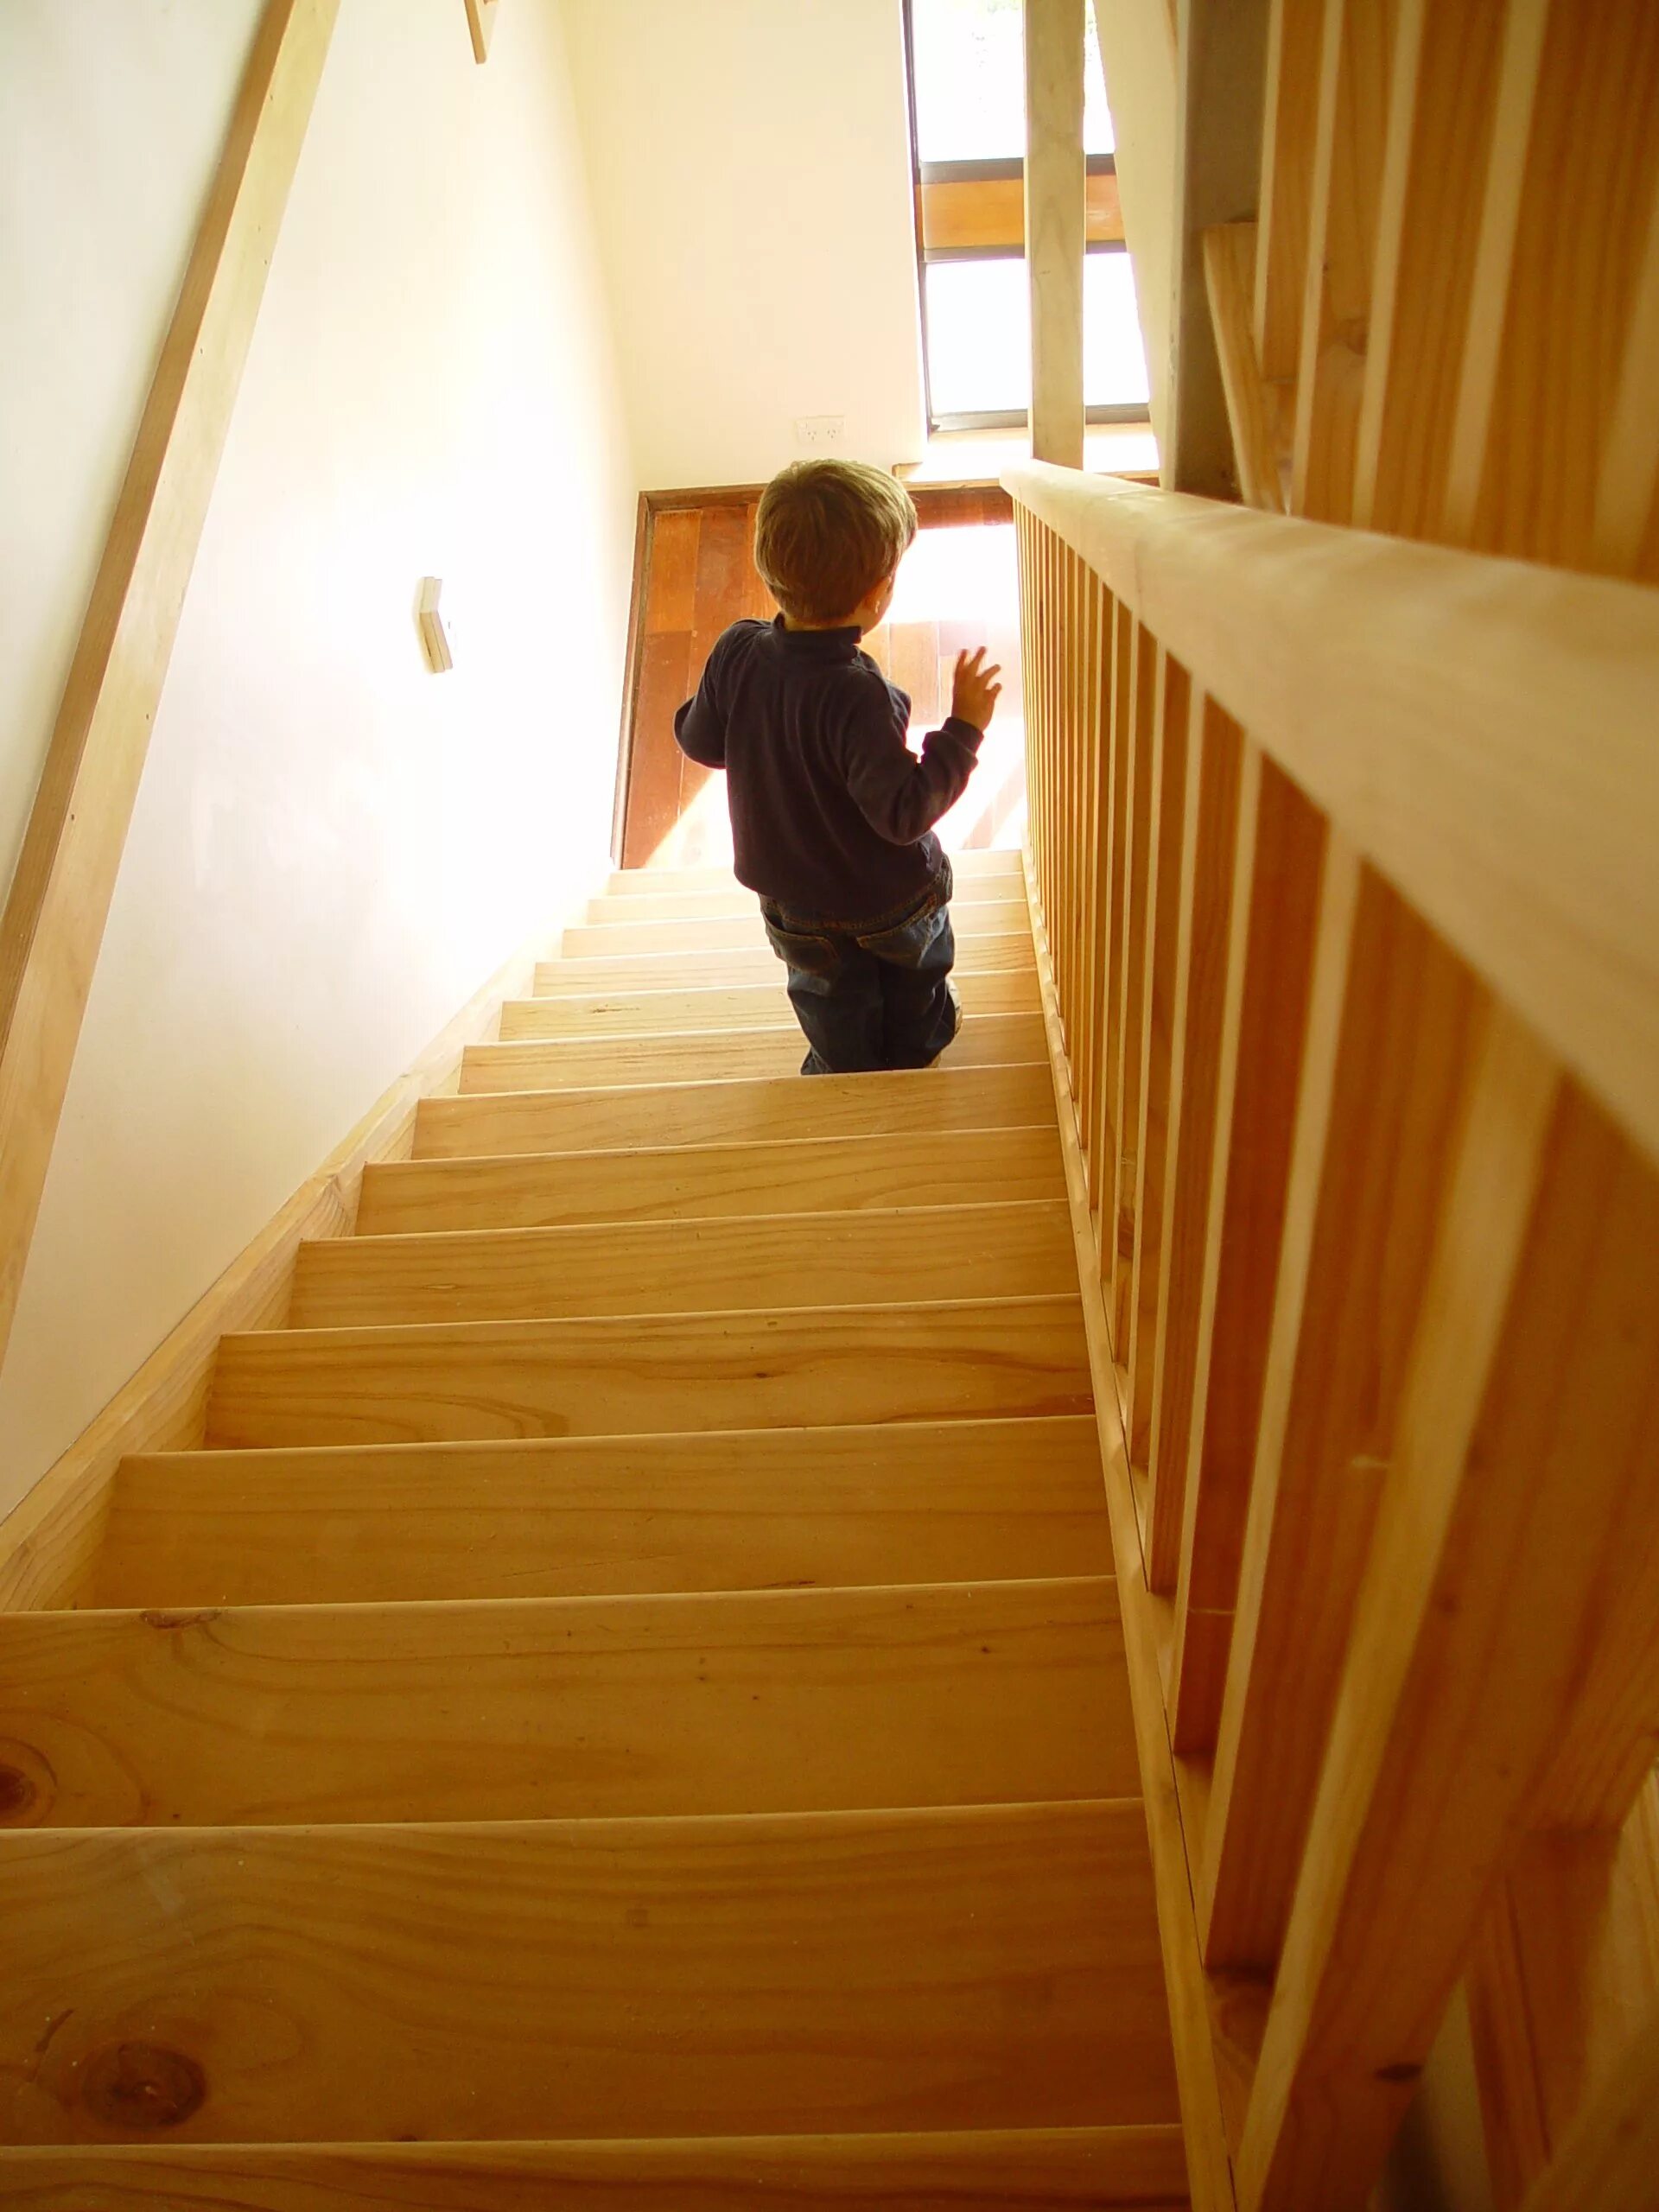 Подниматься спускаться по лестнице. Лестница для детей. Лестница деревянная детская. Фотосессия на лестнице в доме. Дошкольник на лестнице.